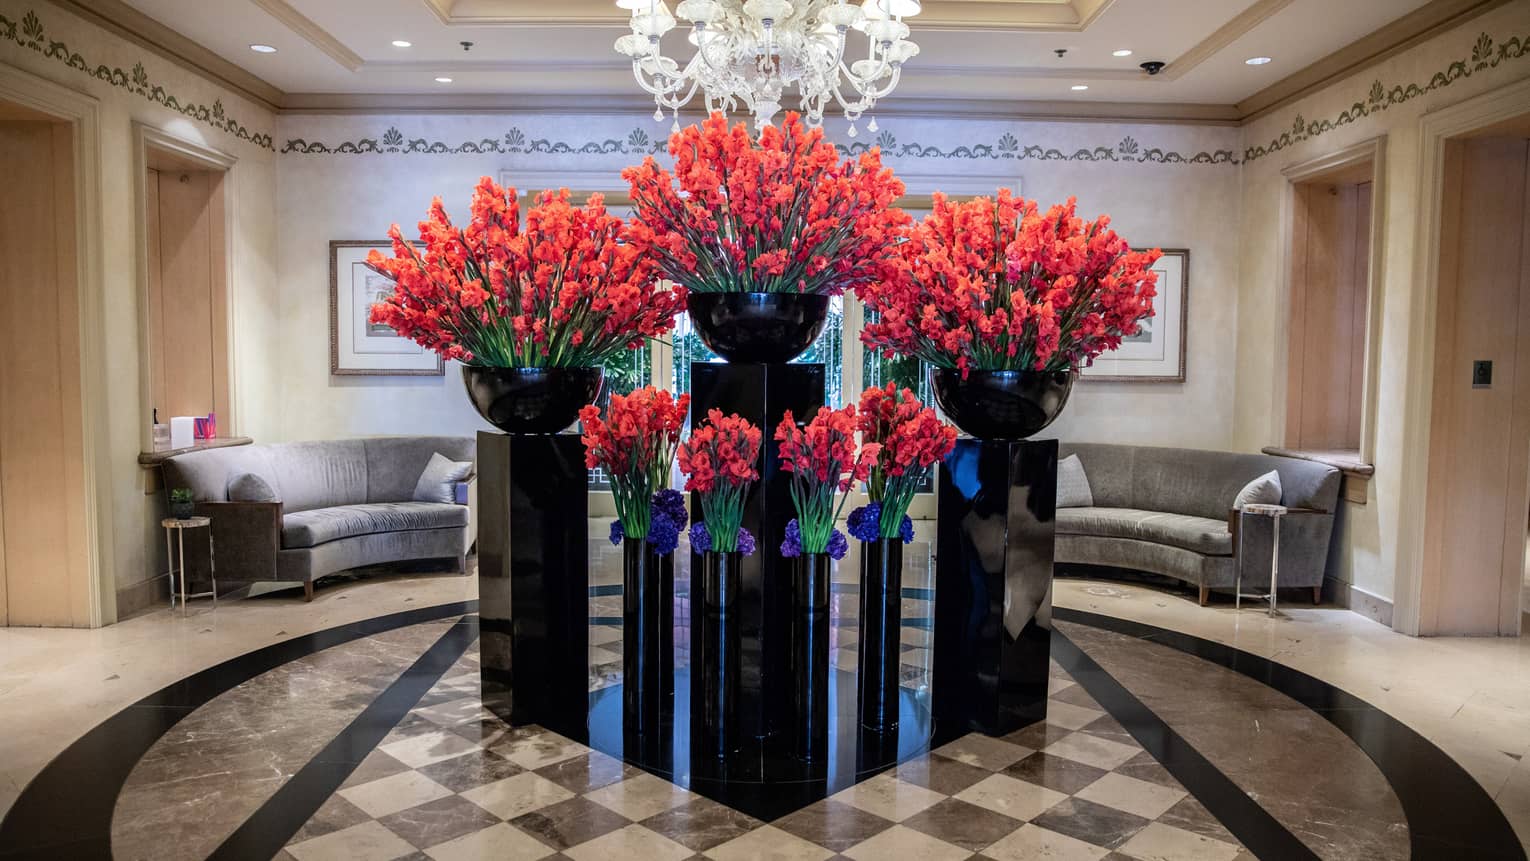 Hotel lobby, large red floral arrangements in black vases under crystal chandelier